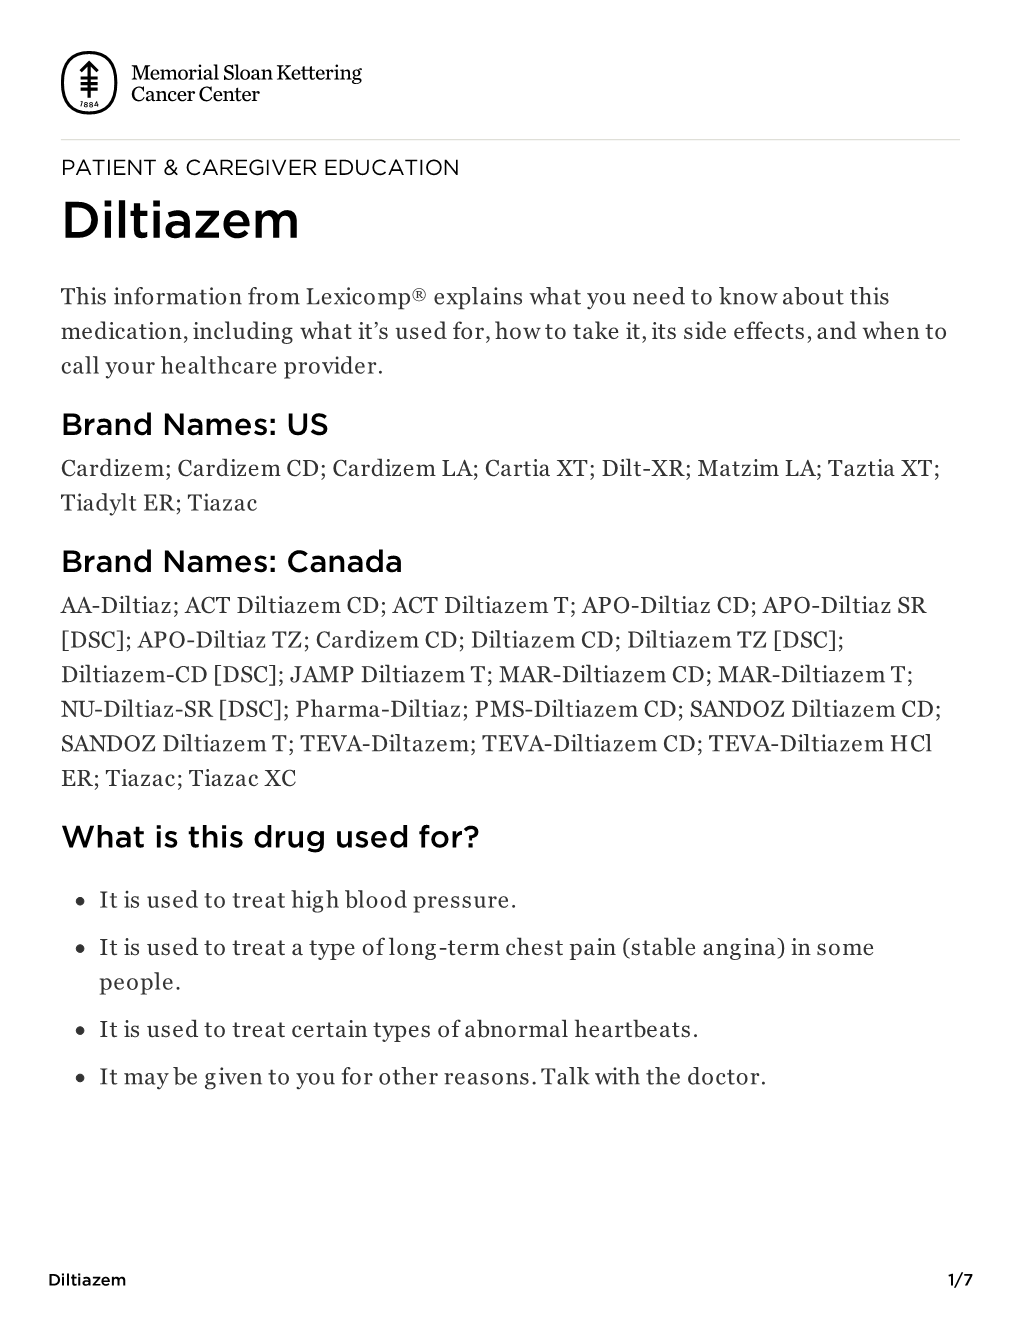 Diltiazem | Memorial Sloan Kettering Cancer Center